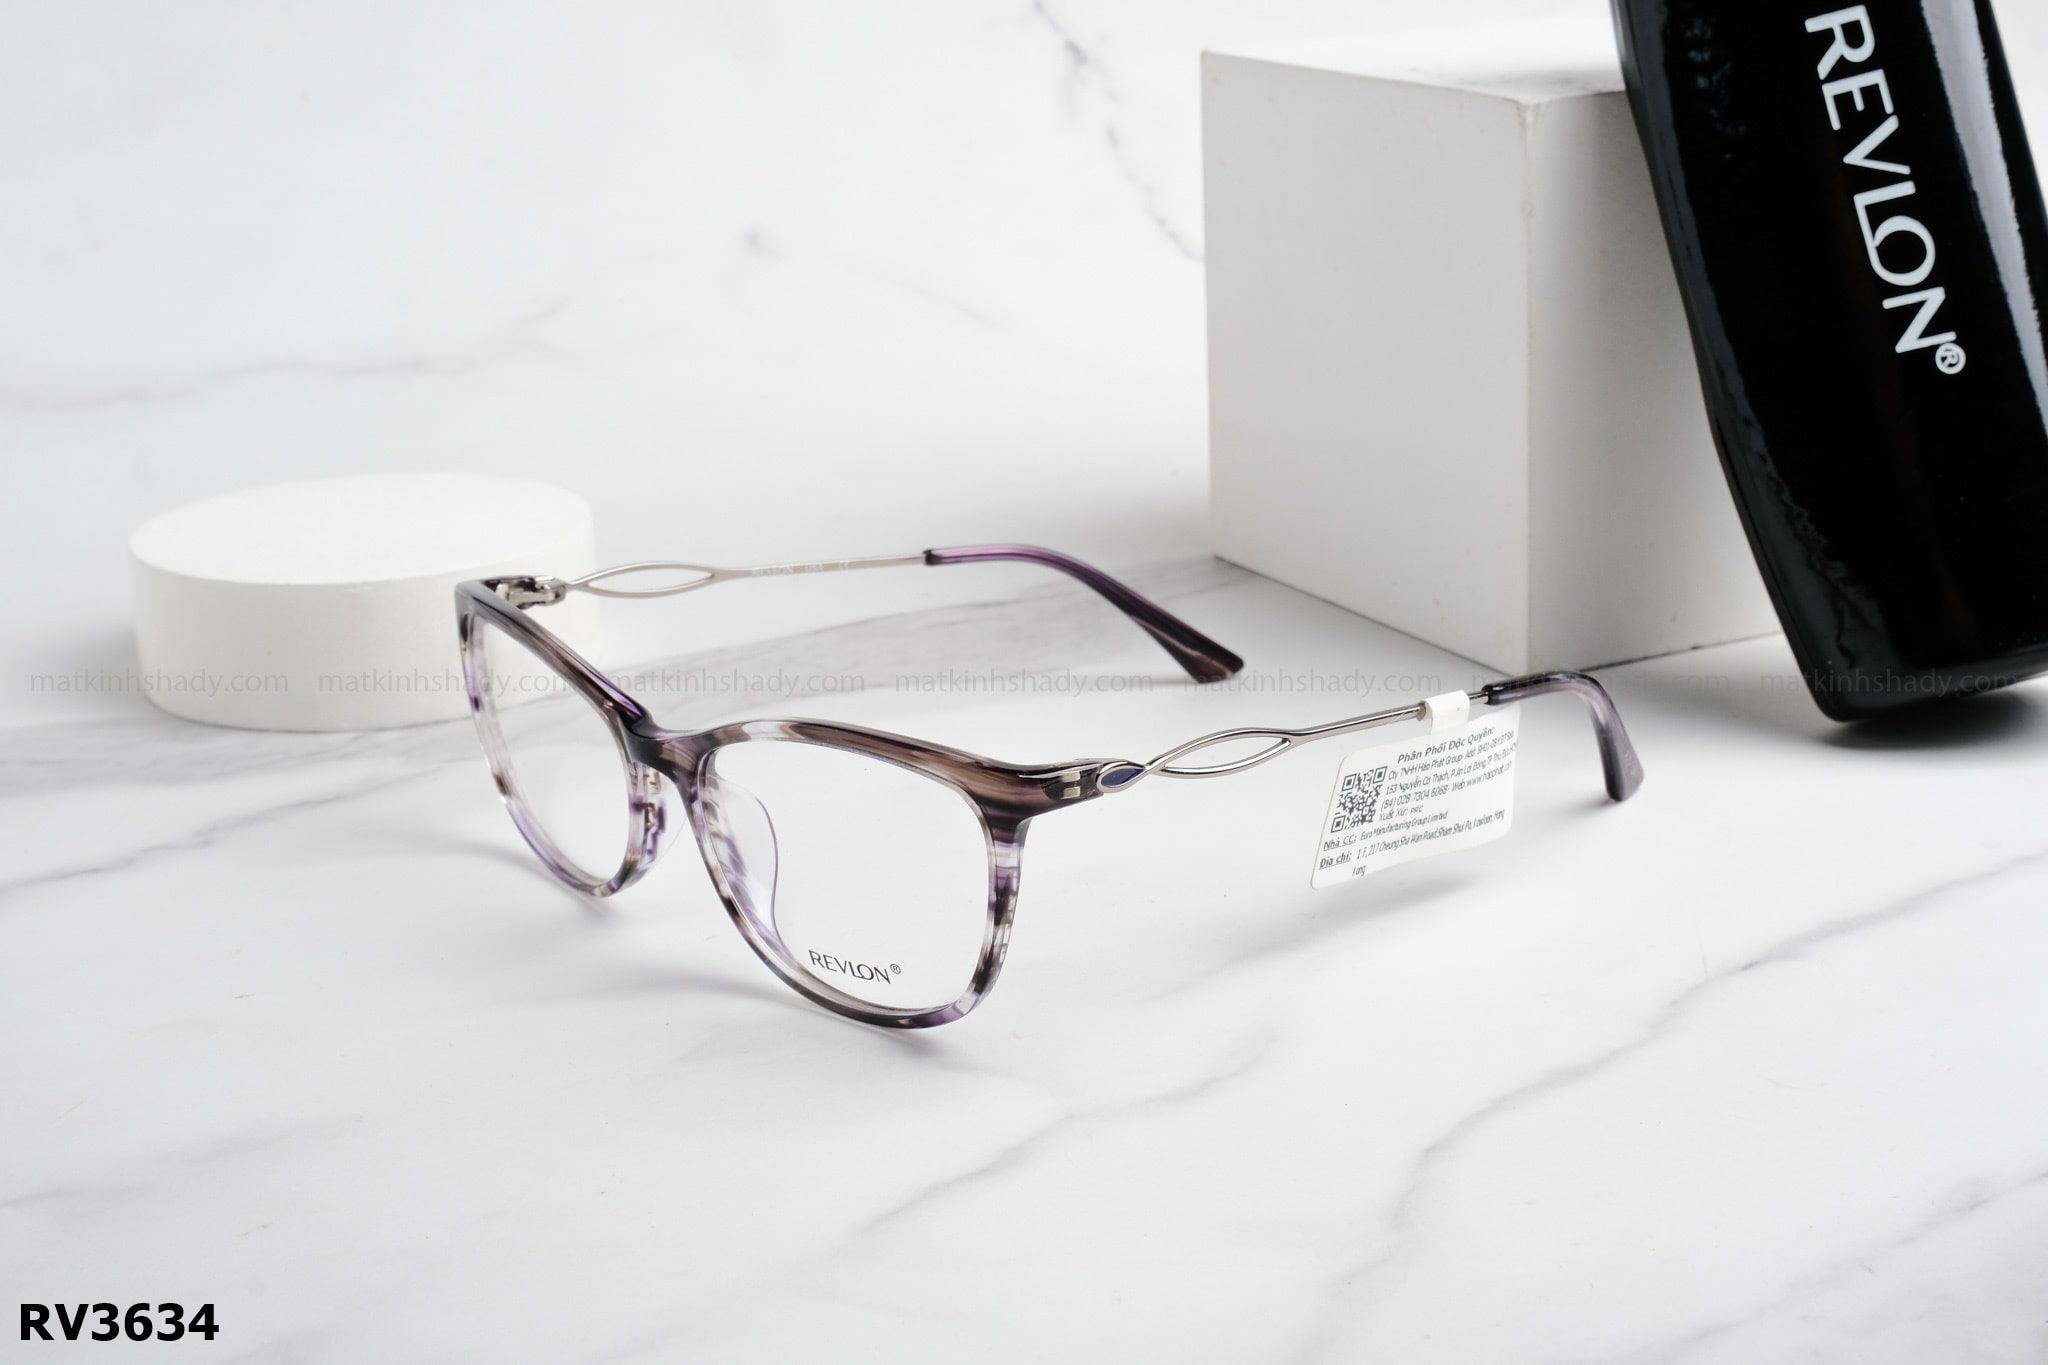  Revlon Eyewear - Glasses - RV3634 